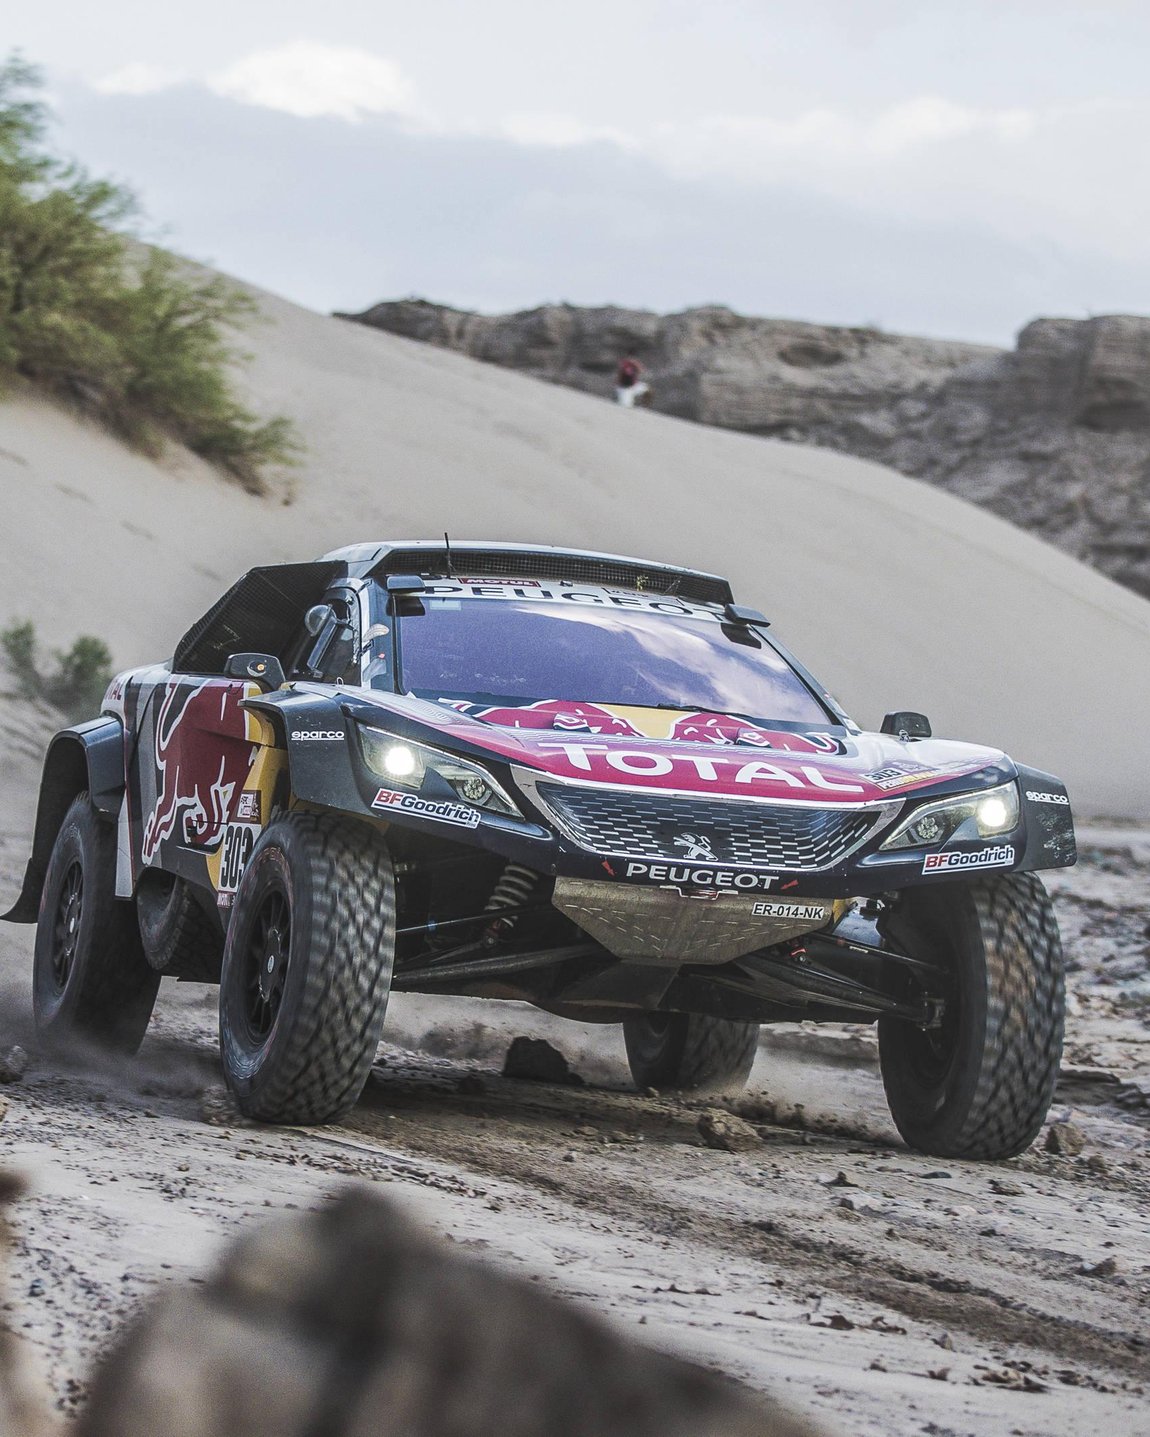 Dakar Rally Wallpaper For Mobile